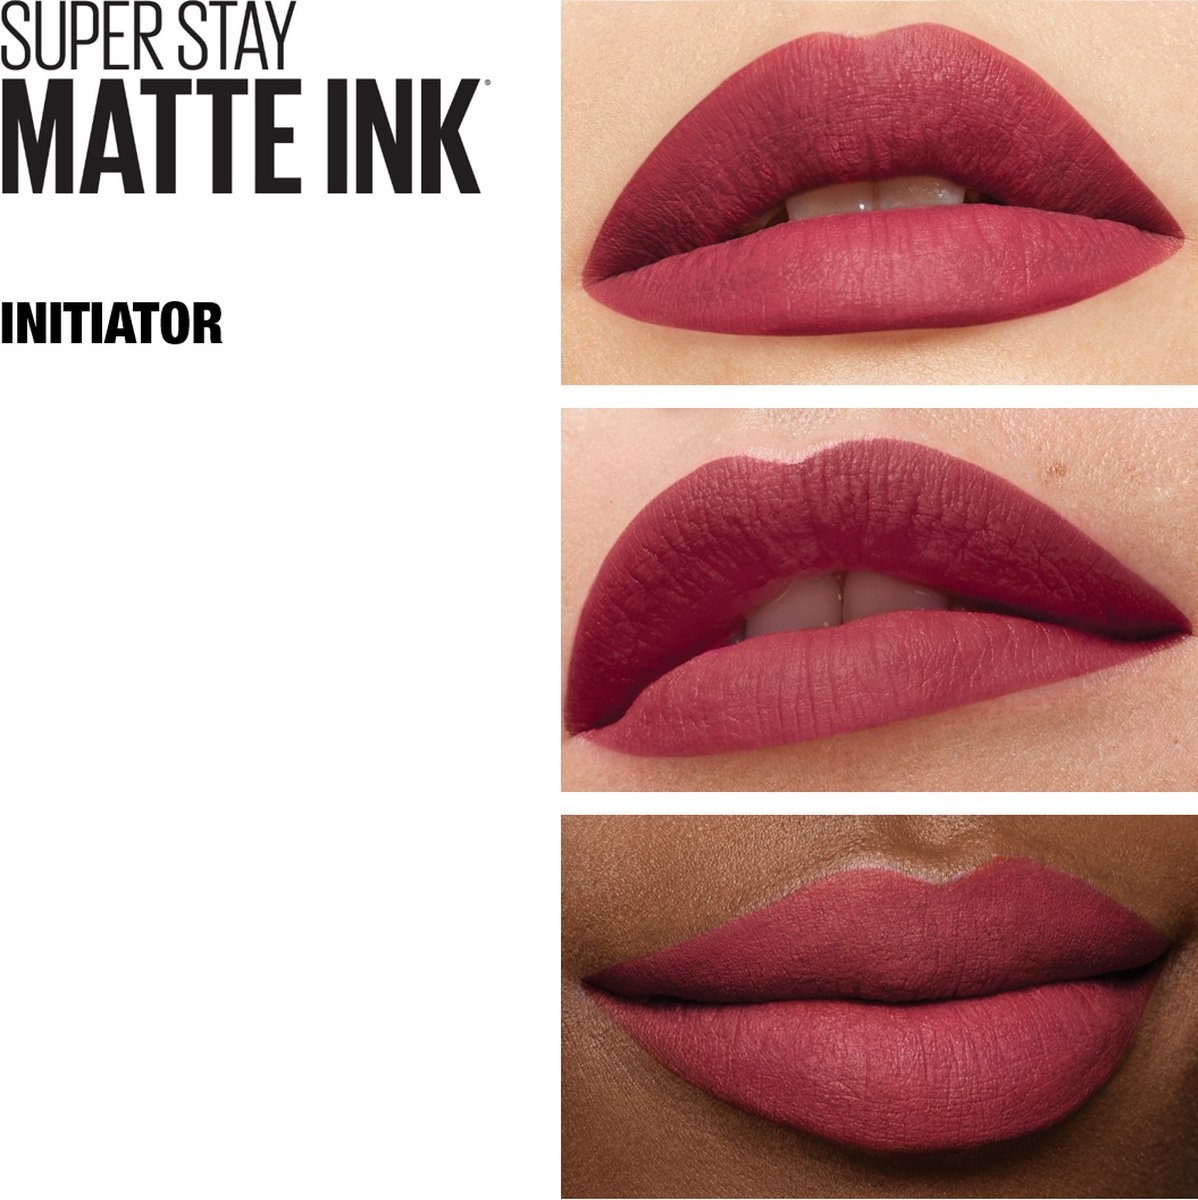 Maybelline SuperStay Matte Ink Lipstick - 170 Initiatior - Pink Lipstick